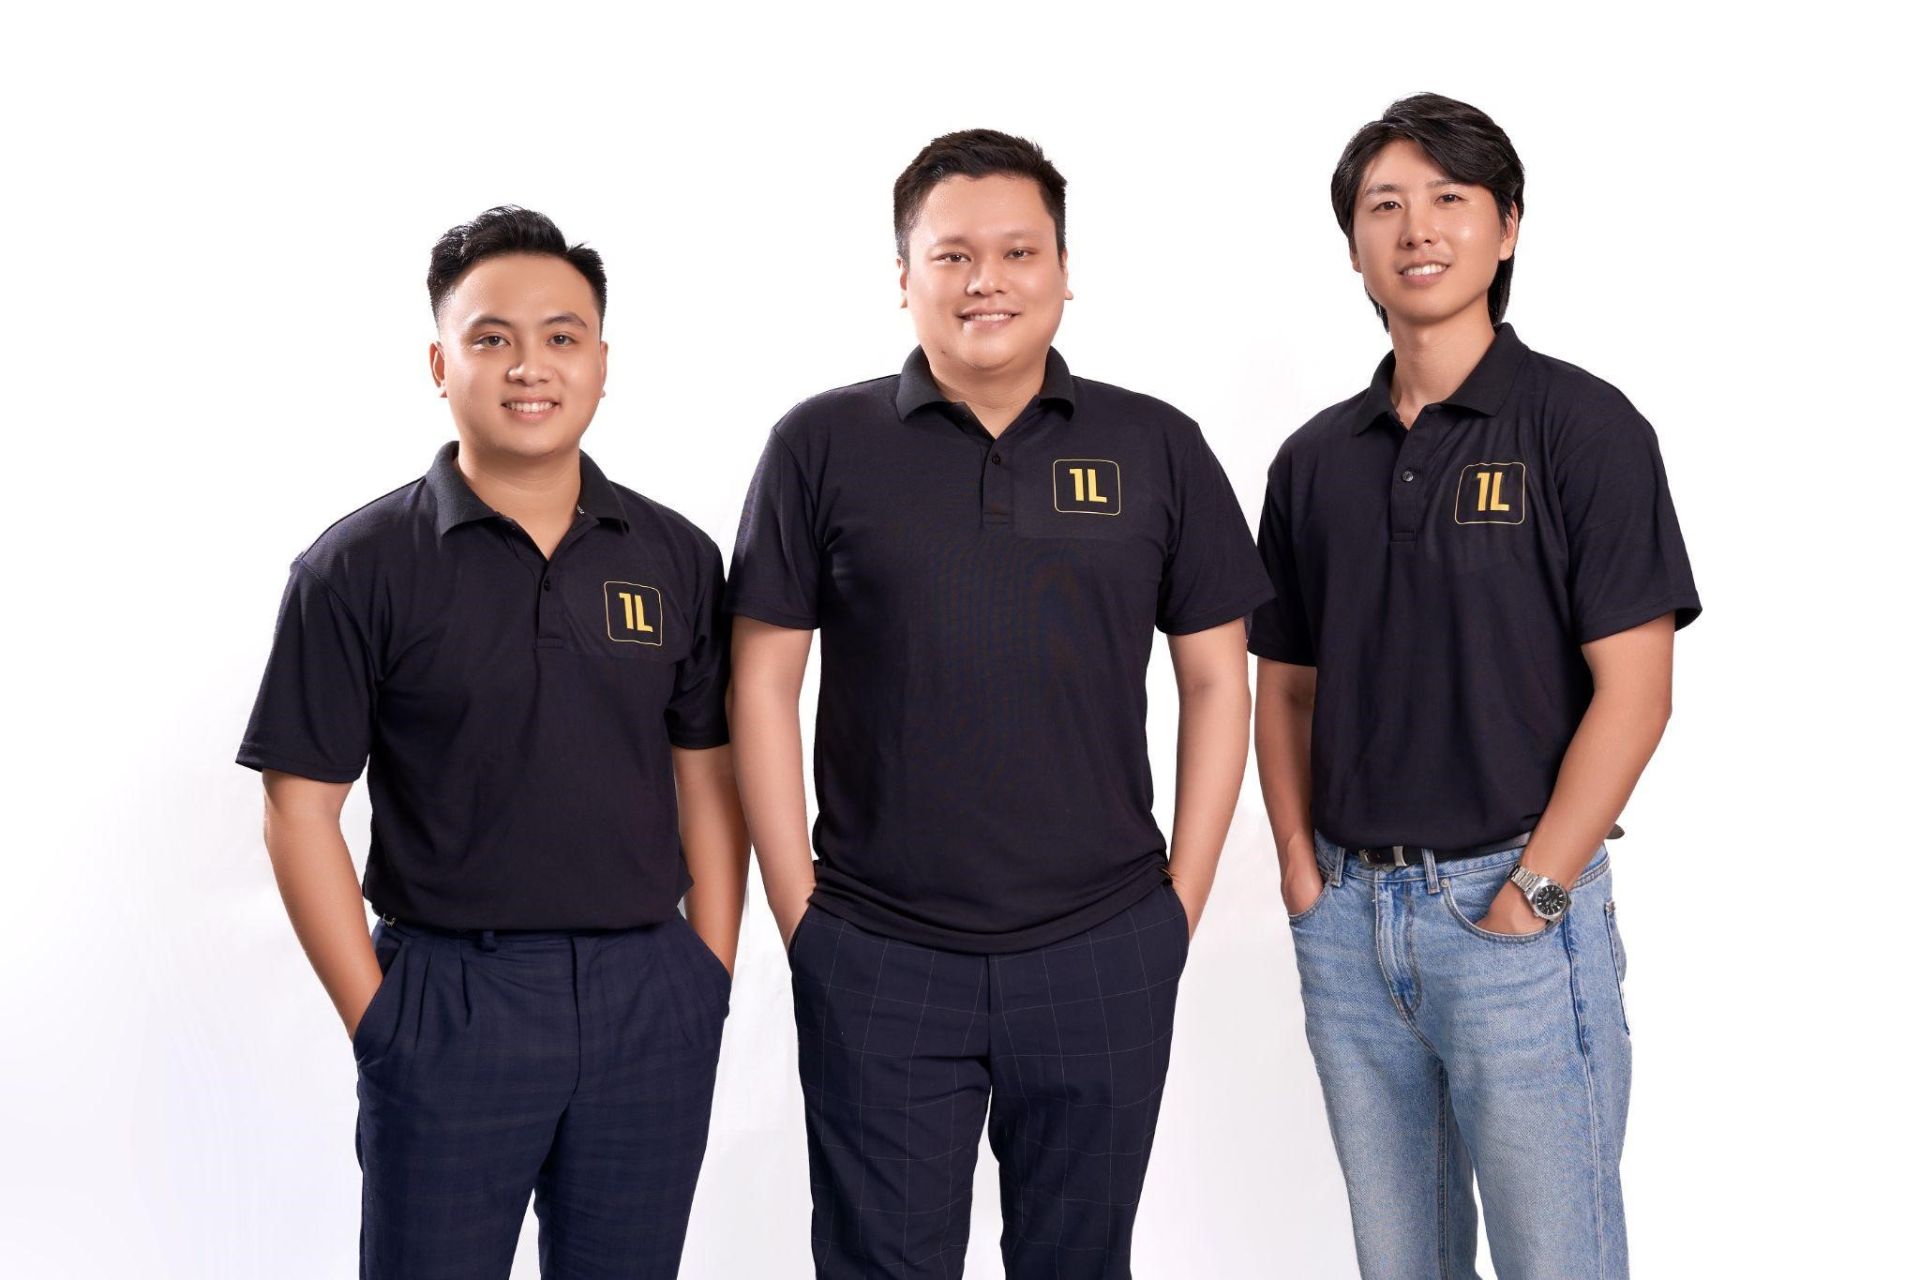 Trái sang phải: Hoàng Nguyễn, Đồng sáng lập và Giám đốc Điều hành; Michael Đỗ, Đồng sáng lập và Giám đốc Điều hành & Joshua Hong, Đồng sáng lập và Giám đốc Kinh doanh của 1Long.